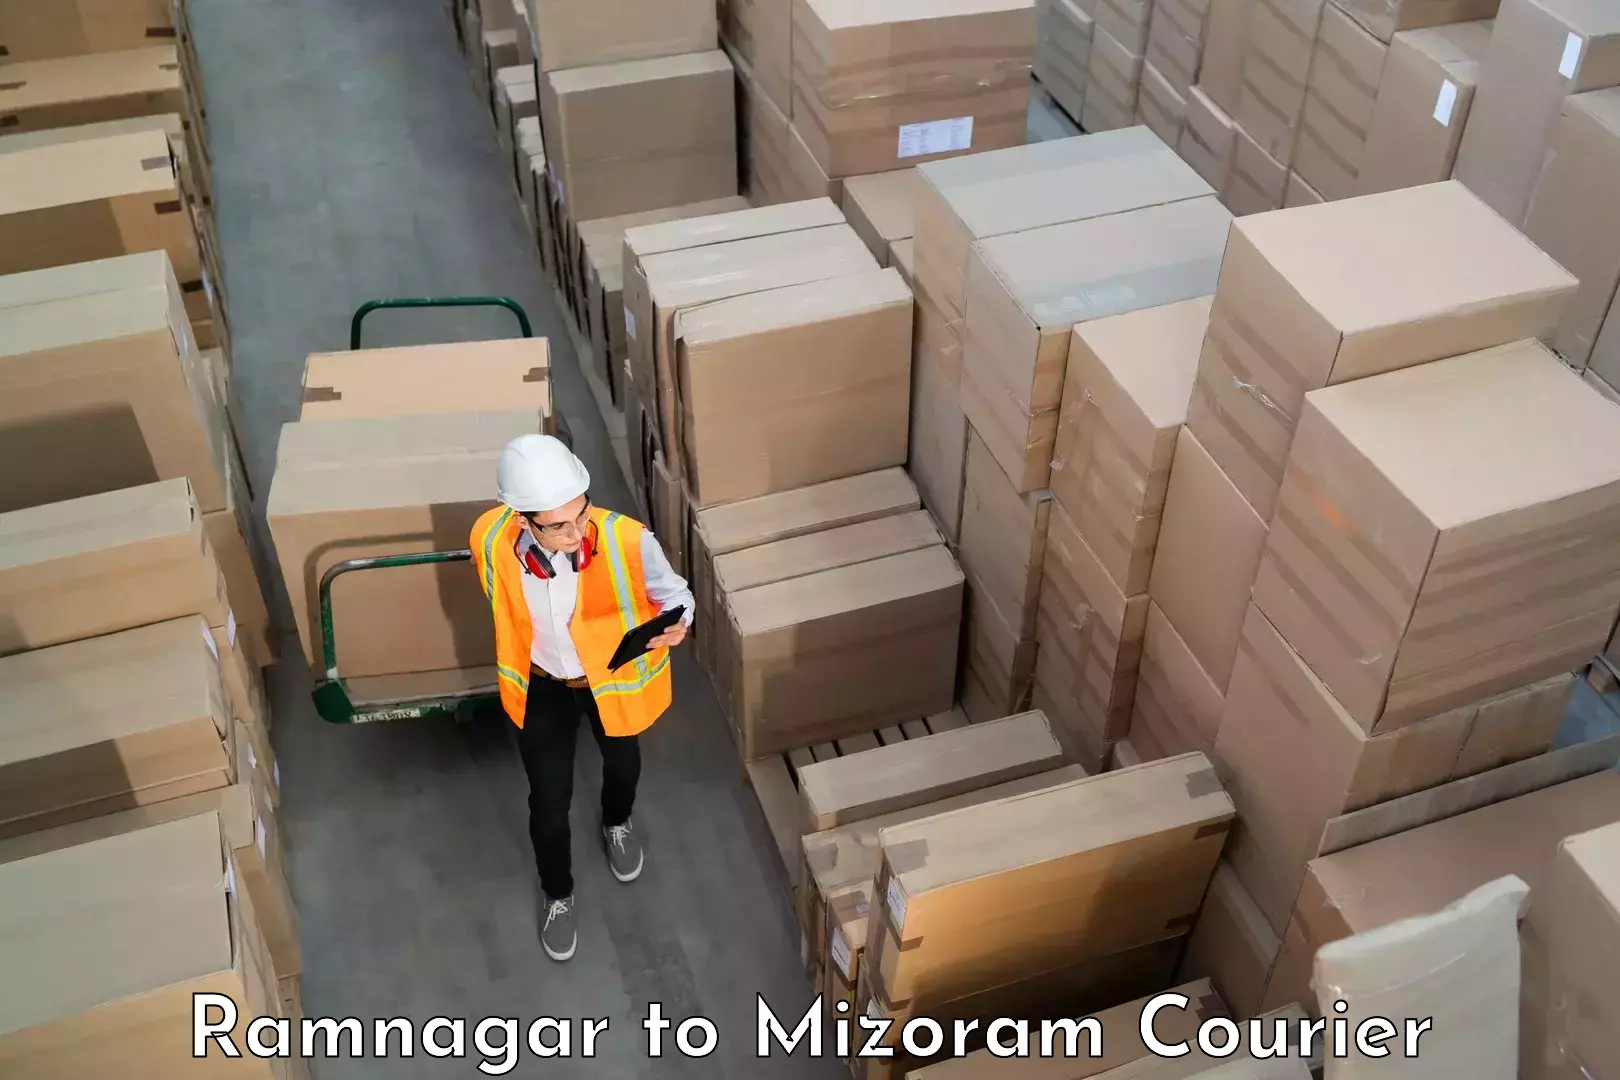 Luggage shipment specialists Ramnagar to Mizoram